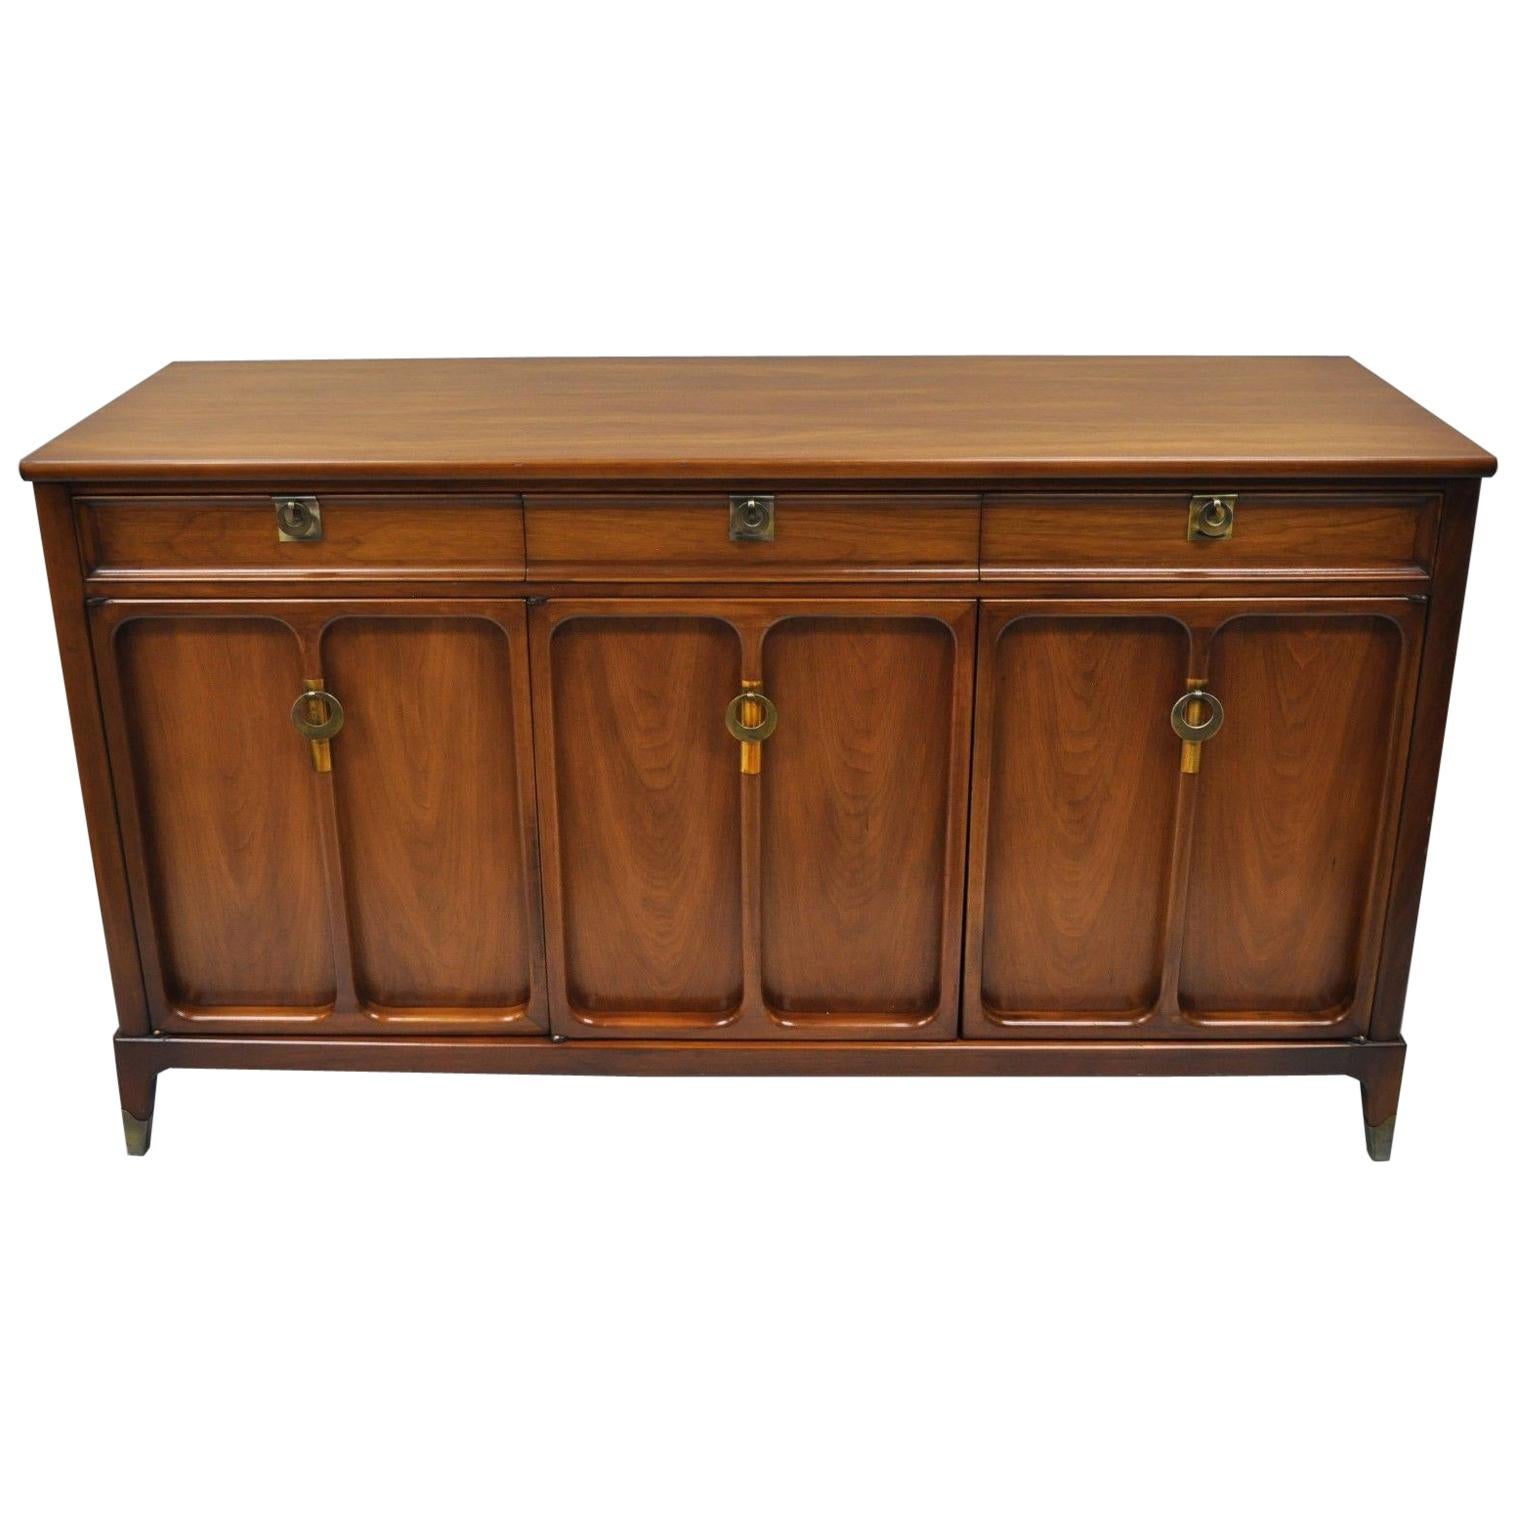 Mid-Century Modern Walnut Credenza Cabinet Sideboard James Mont White Furniture